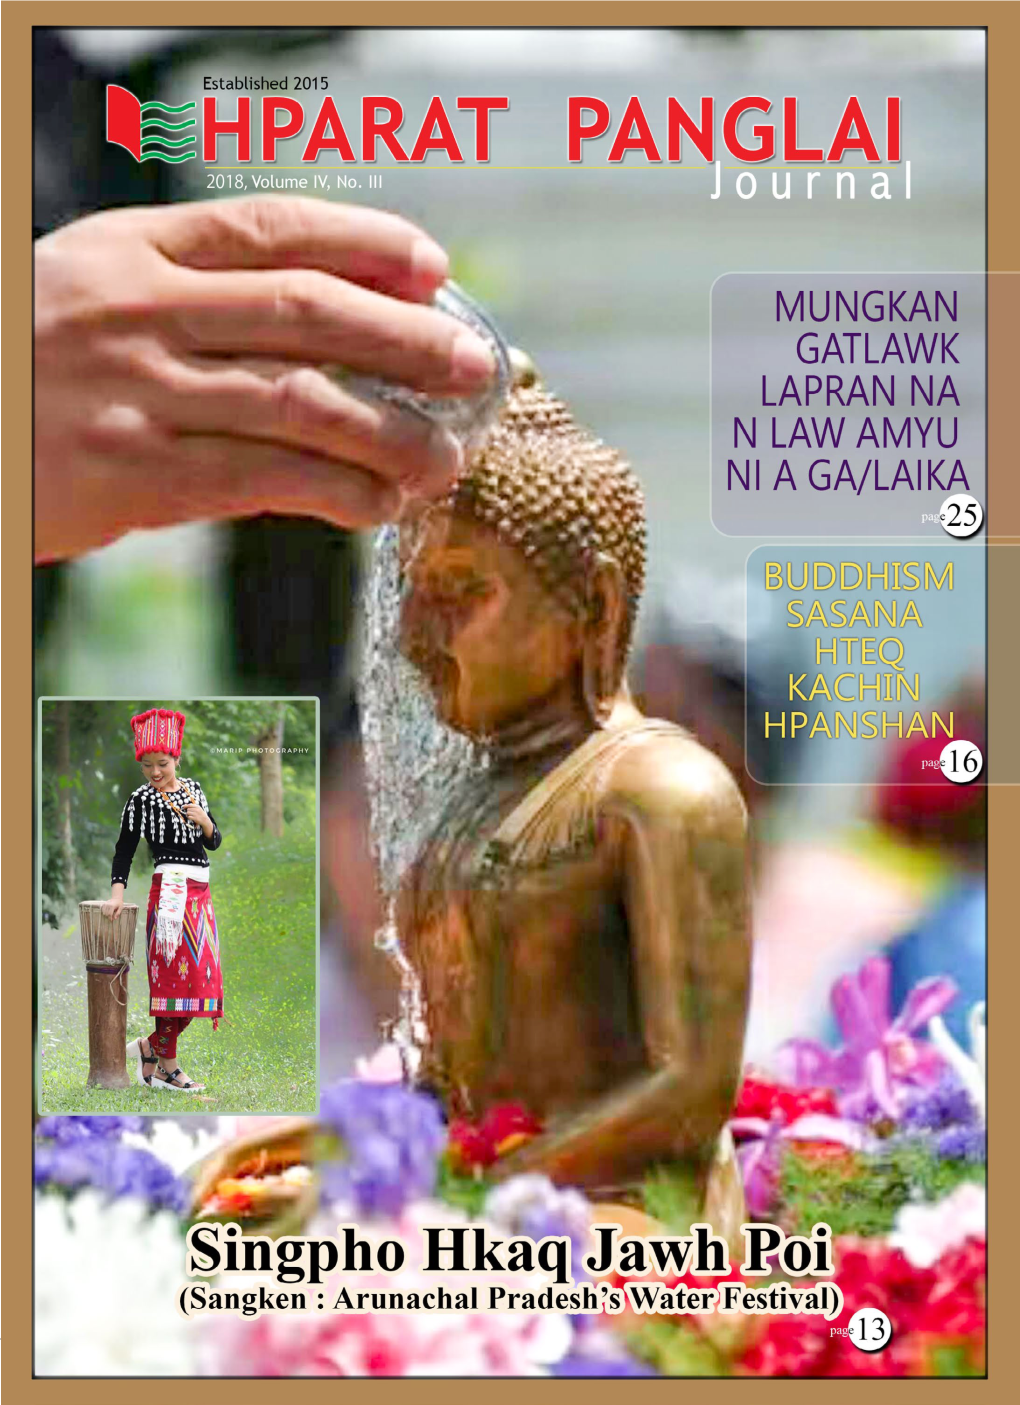 2018 Volume IV, No. III Established 2015. Hparat Panglai Journal